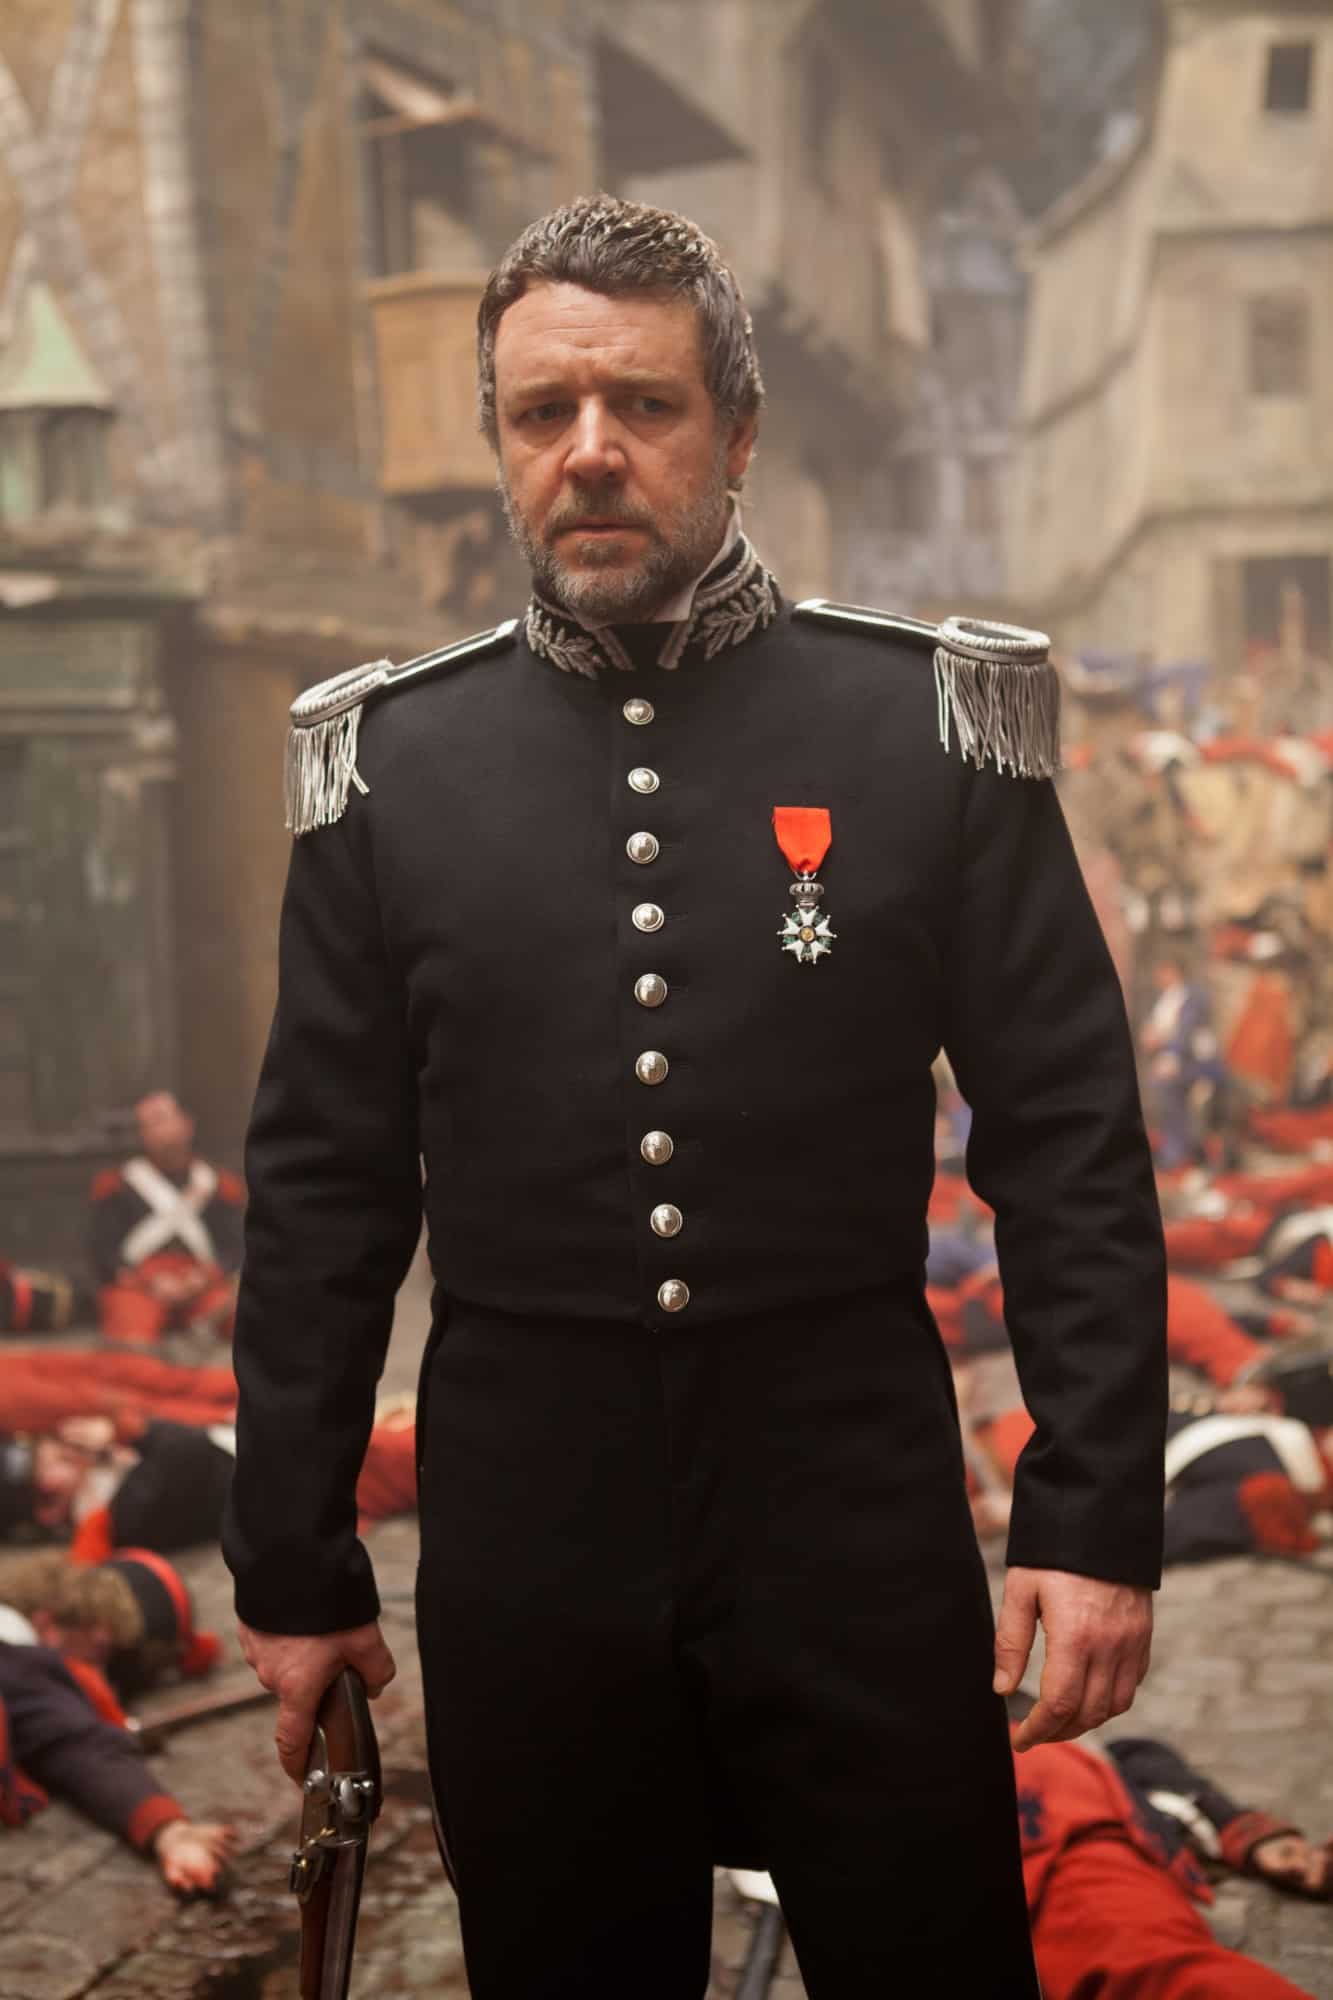 Russell Crowe as Javert